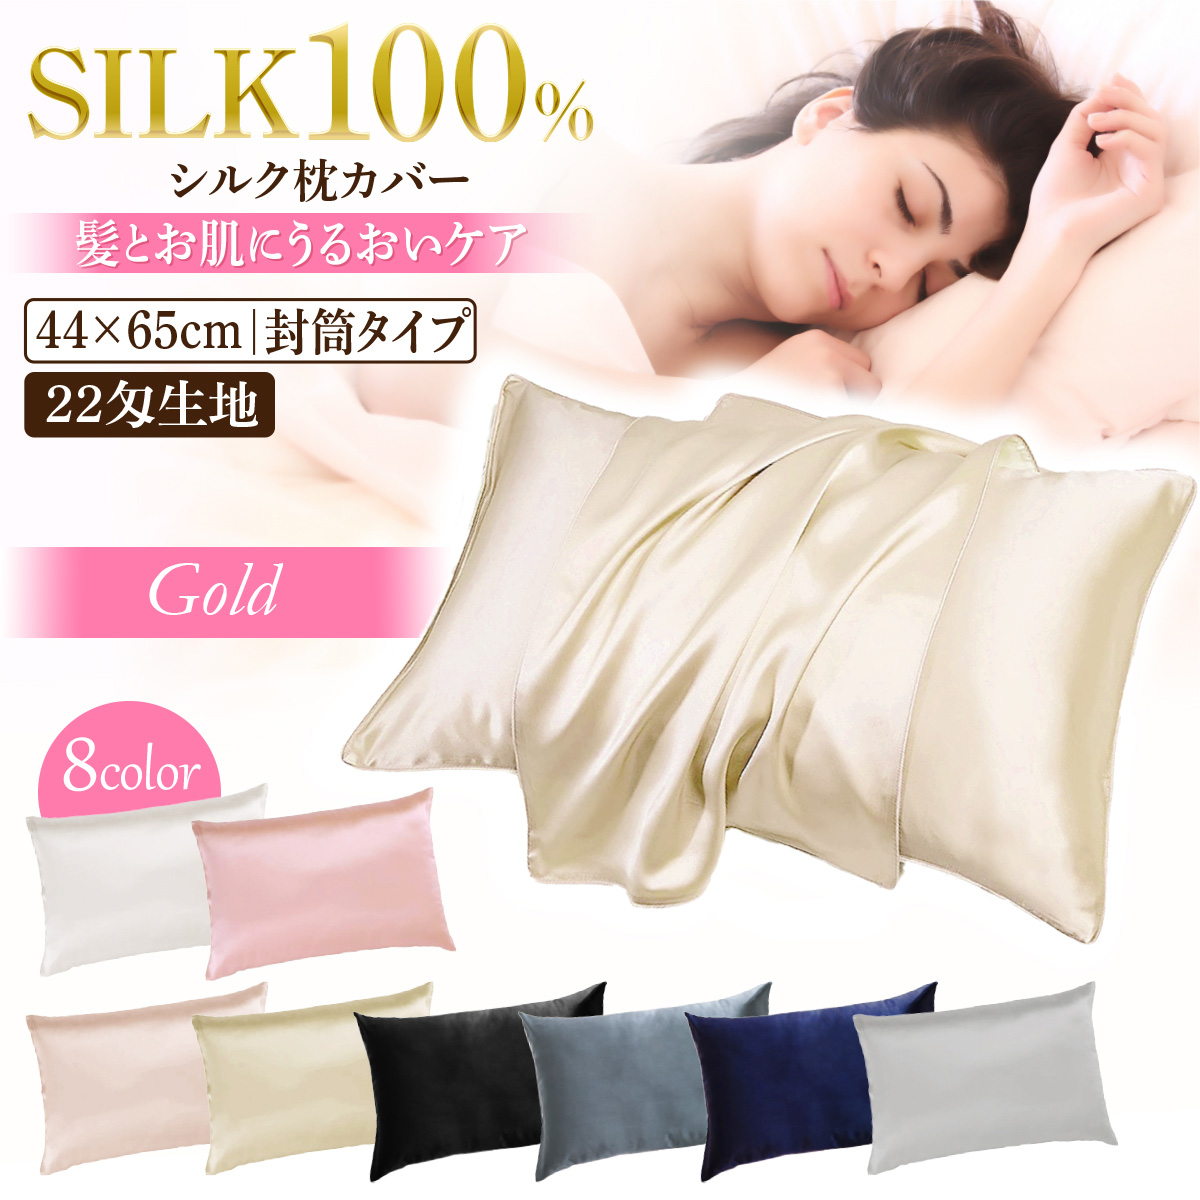 100%シルク枕カバー光沢 高級 滑らかな材質 ゴールド 35*50cm